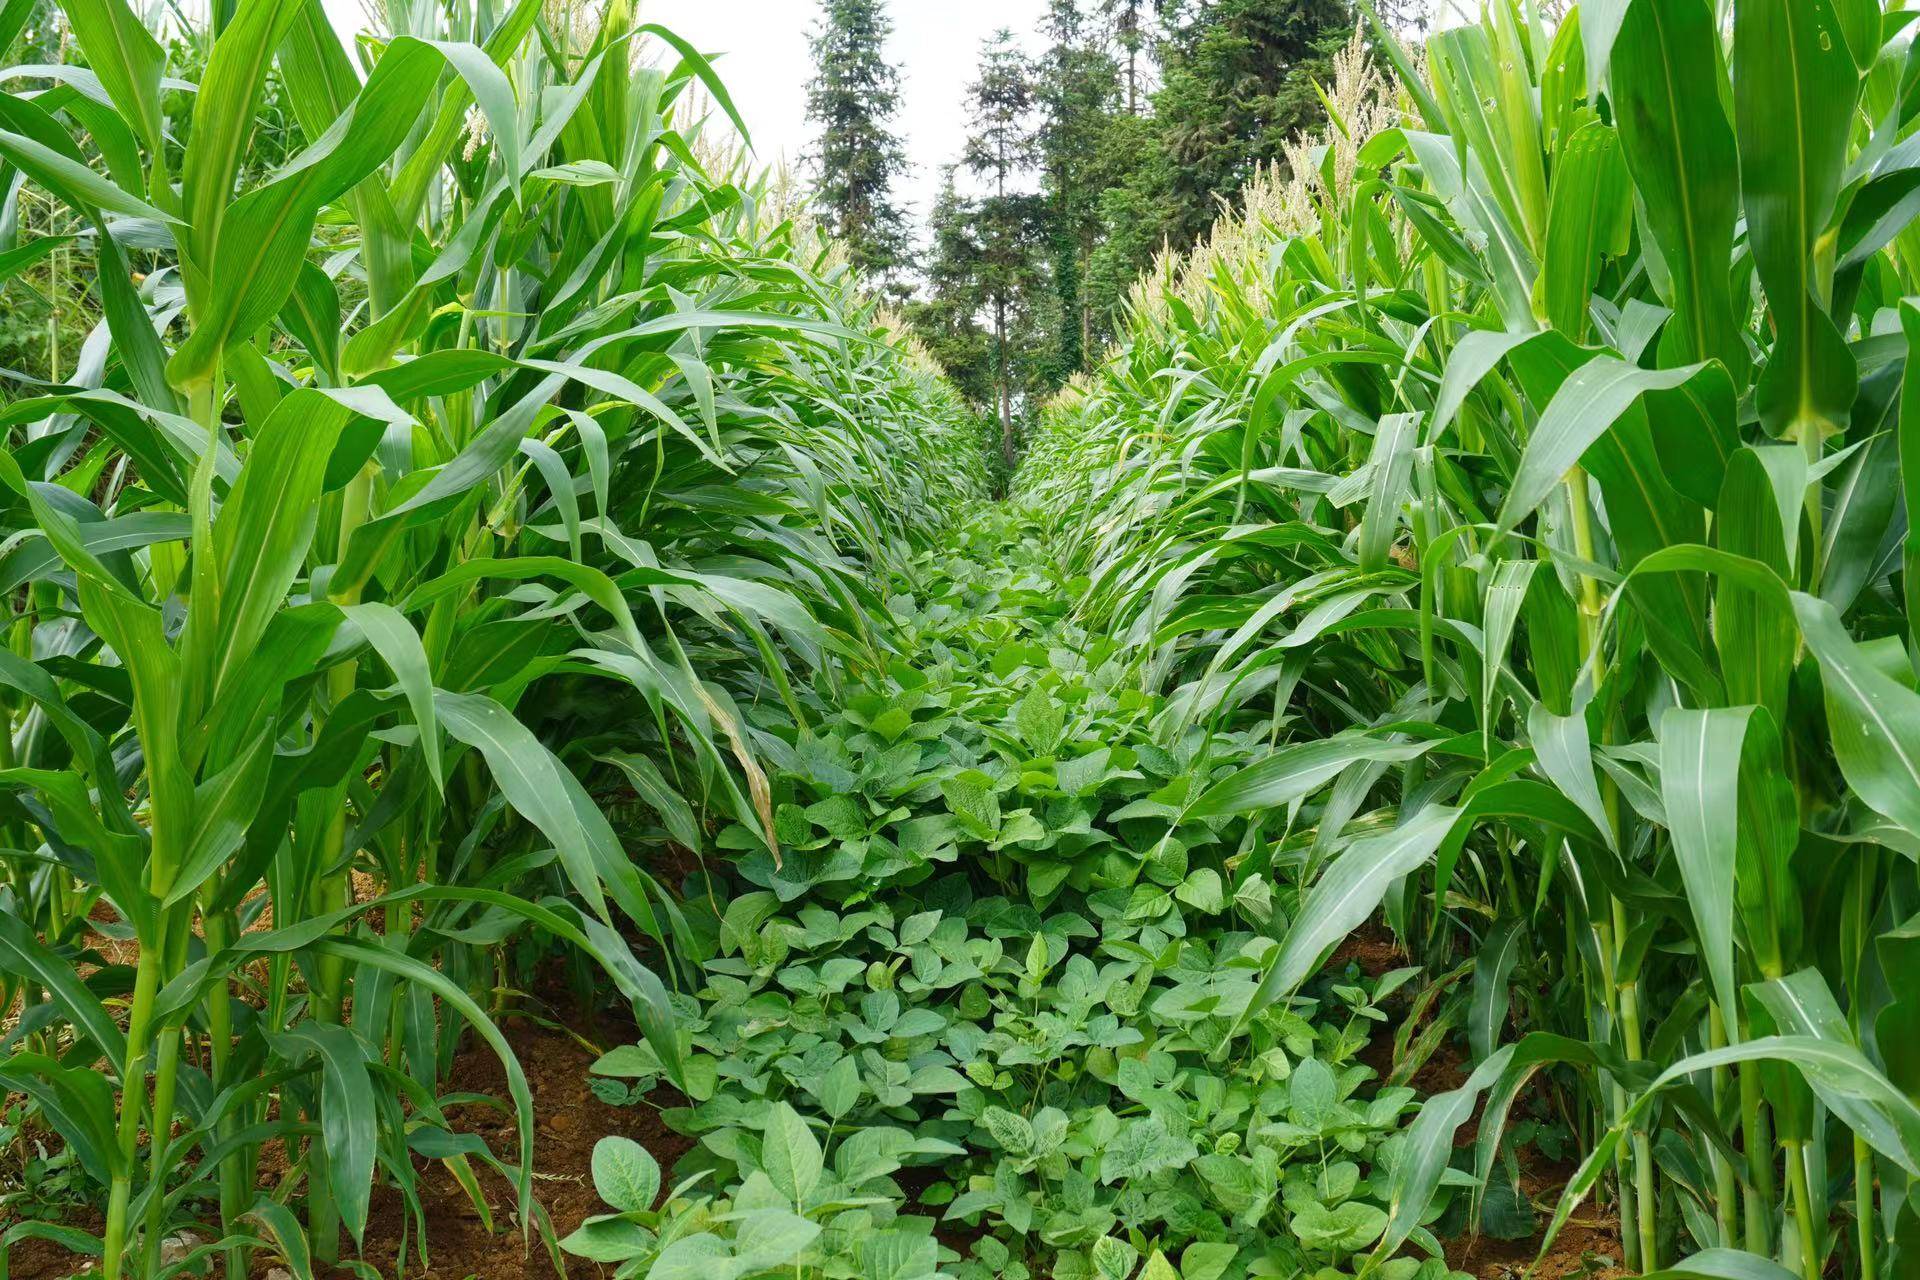 黔南:提升粮食生产能力 夯实粮食安全根基